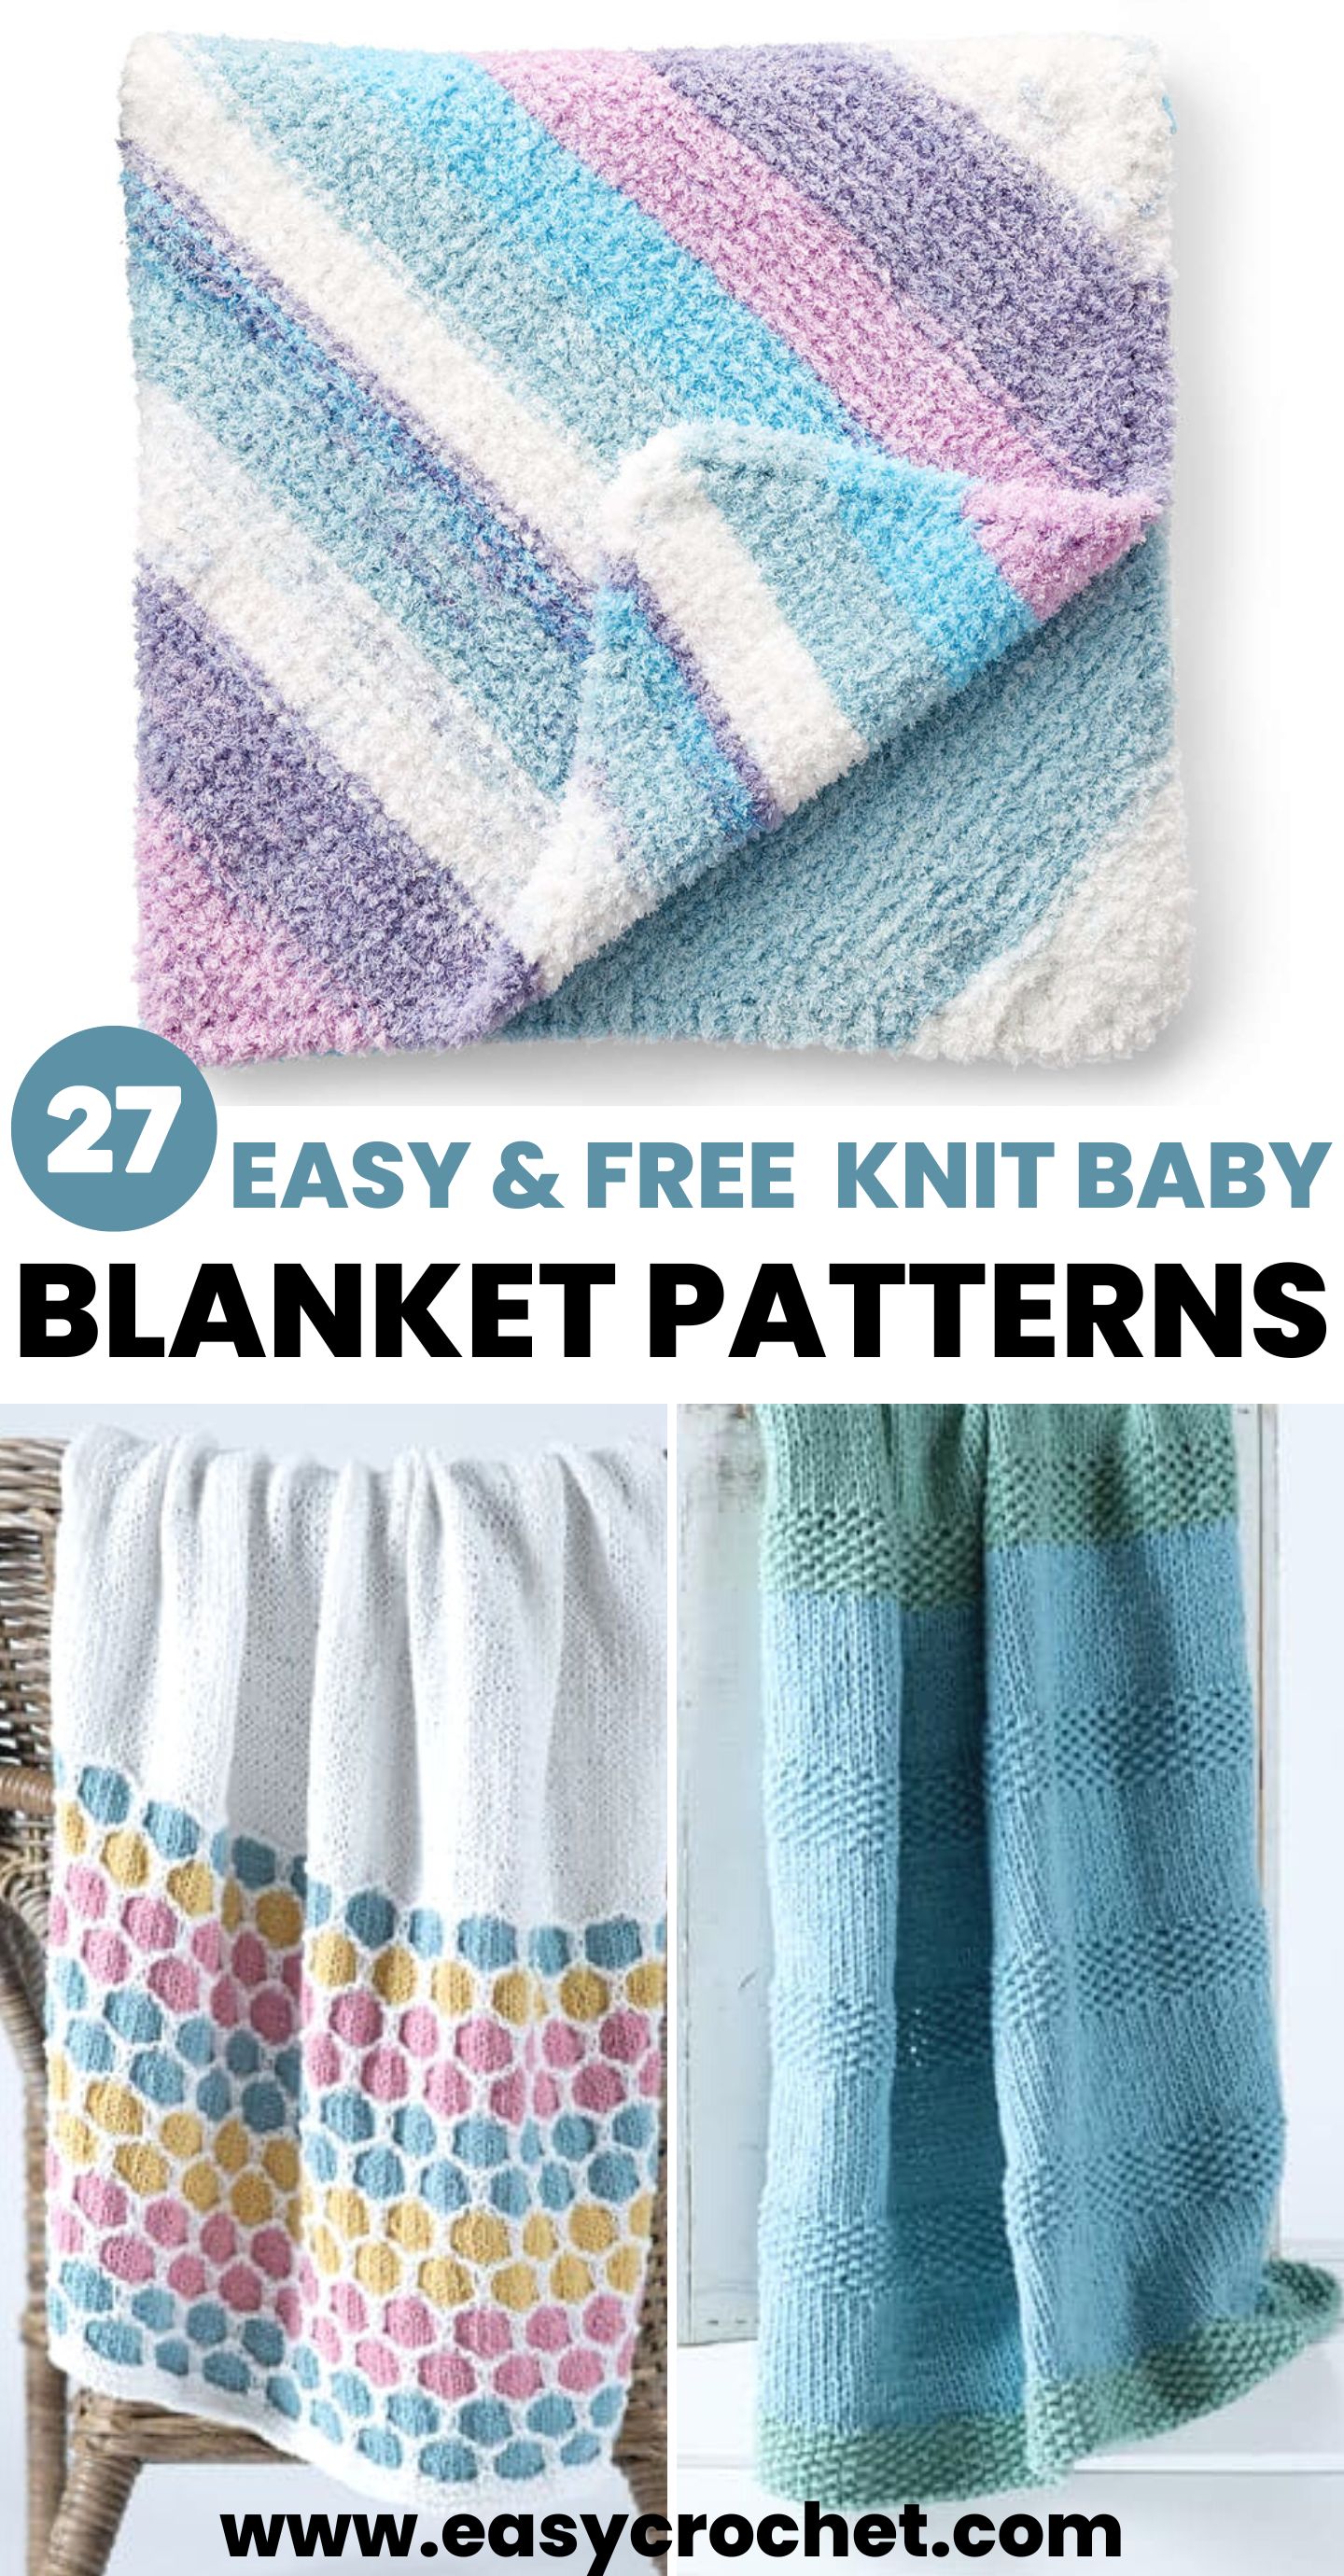 Blanket in Bernat Pipsqueak, Knitting Patterns